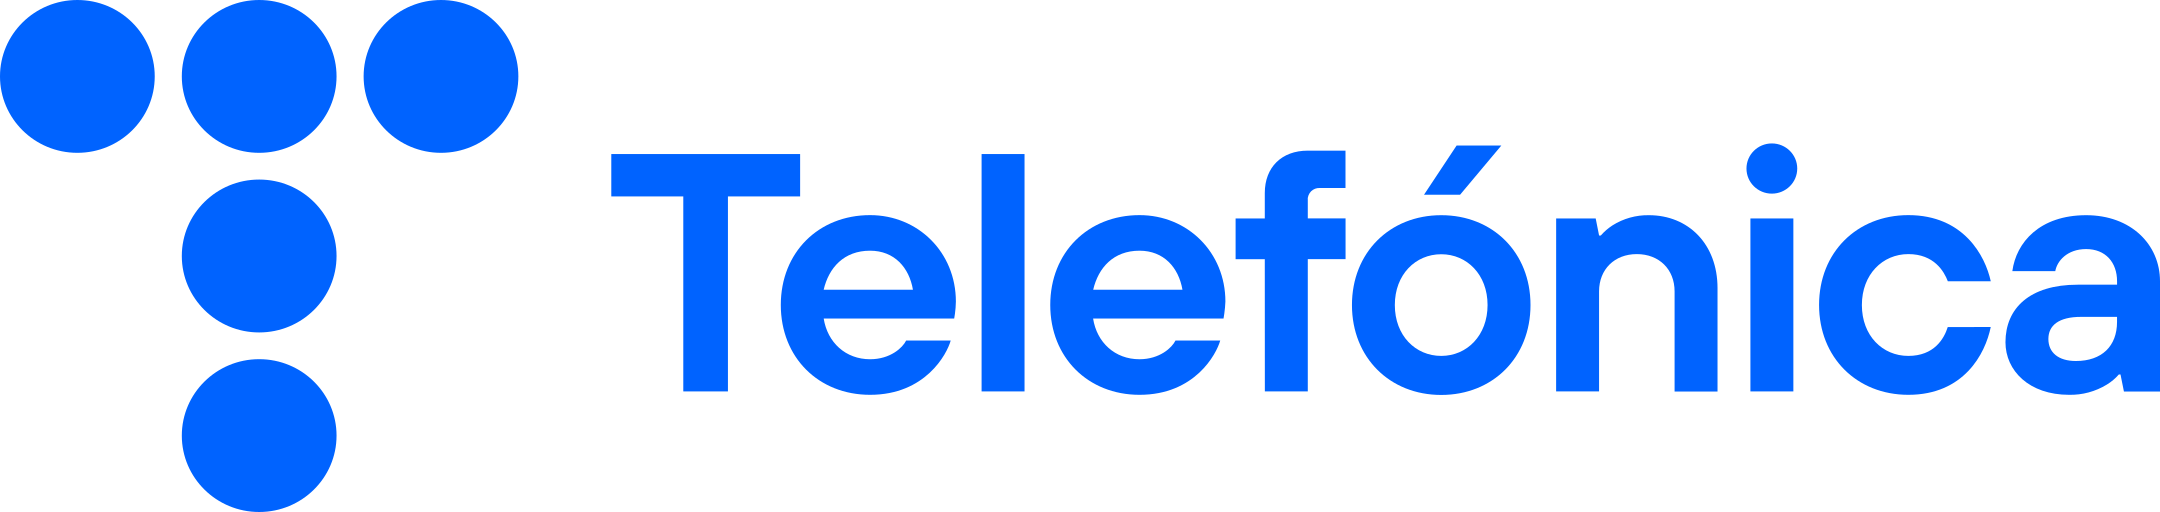 telefonica logo 1 1 - Telefónica Logo